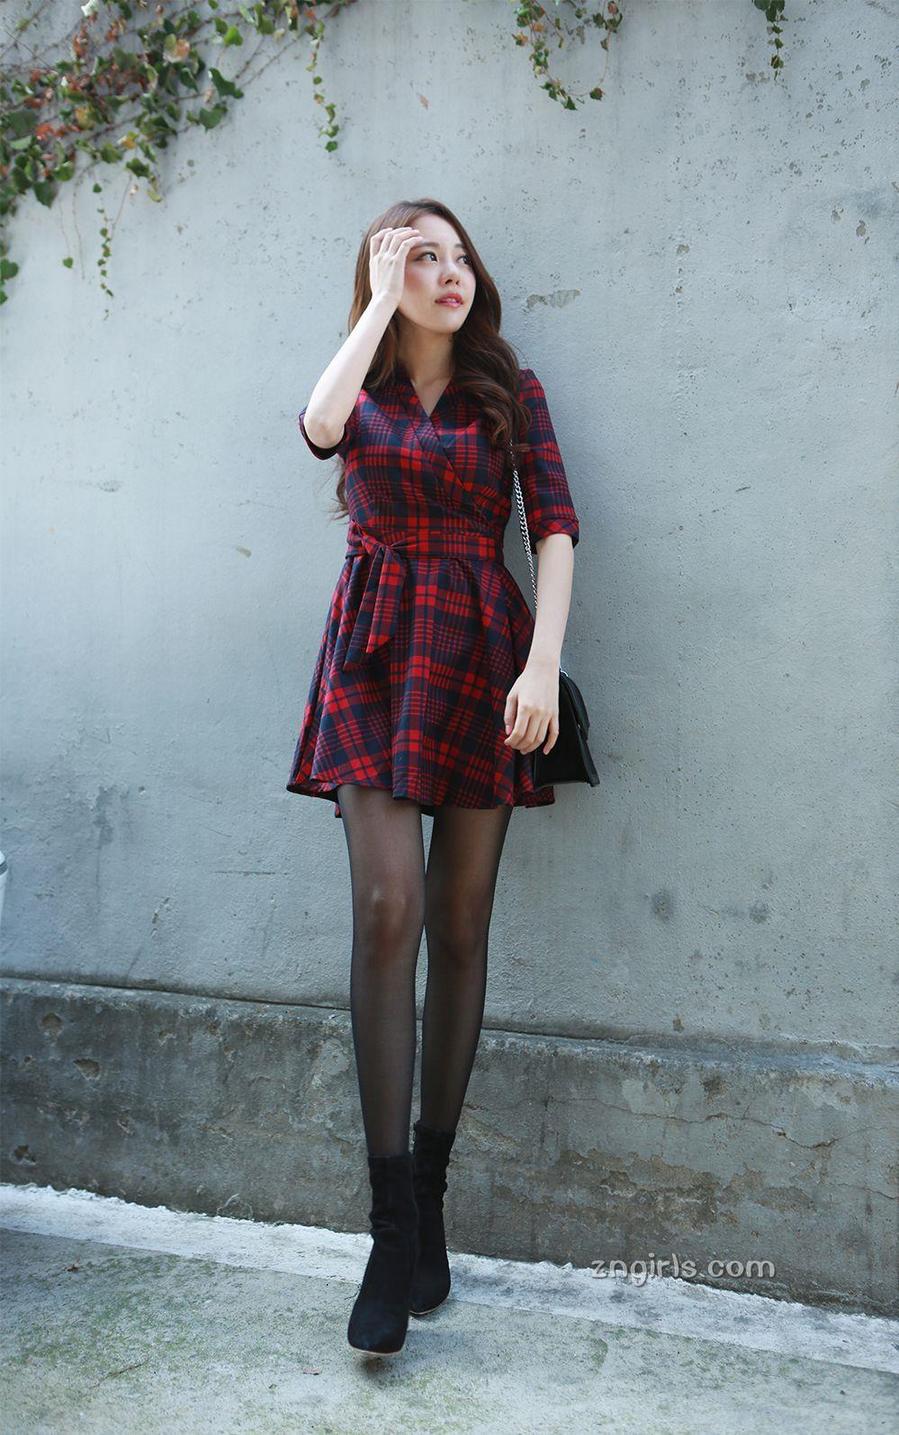 韩国美女模特金敏英黑丝美腿写真